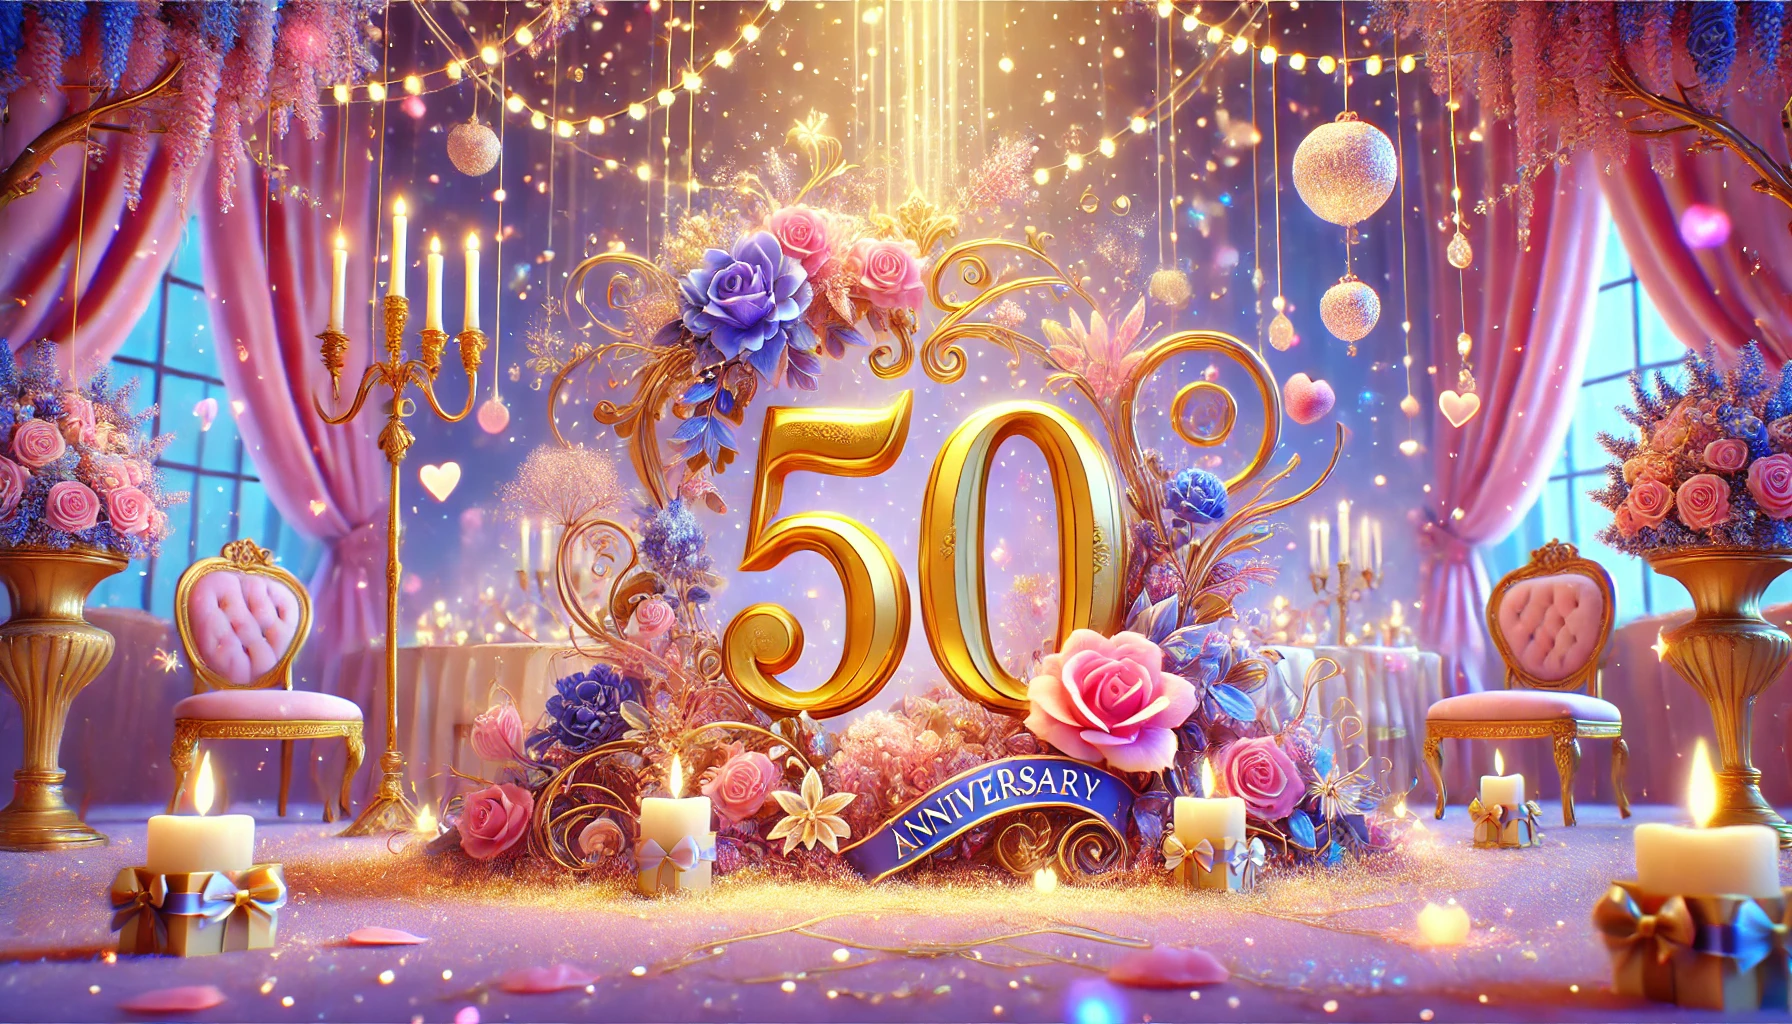 Życzenia na 50 rocznicę ślubu - sekrety, które sprawią, że Złote Gody będą niezapomniane!